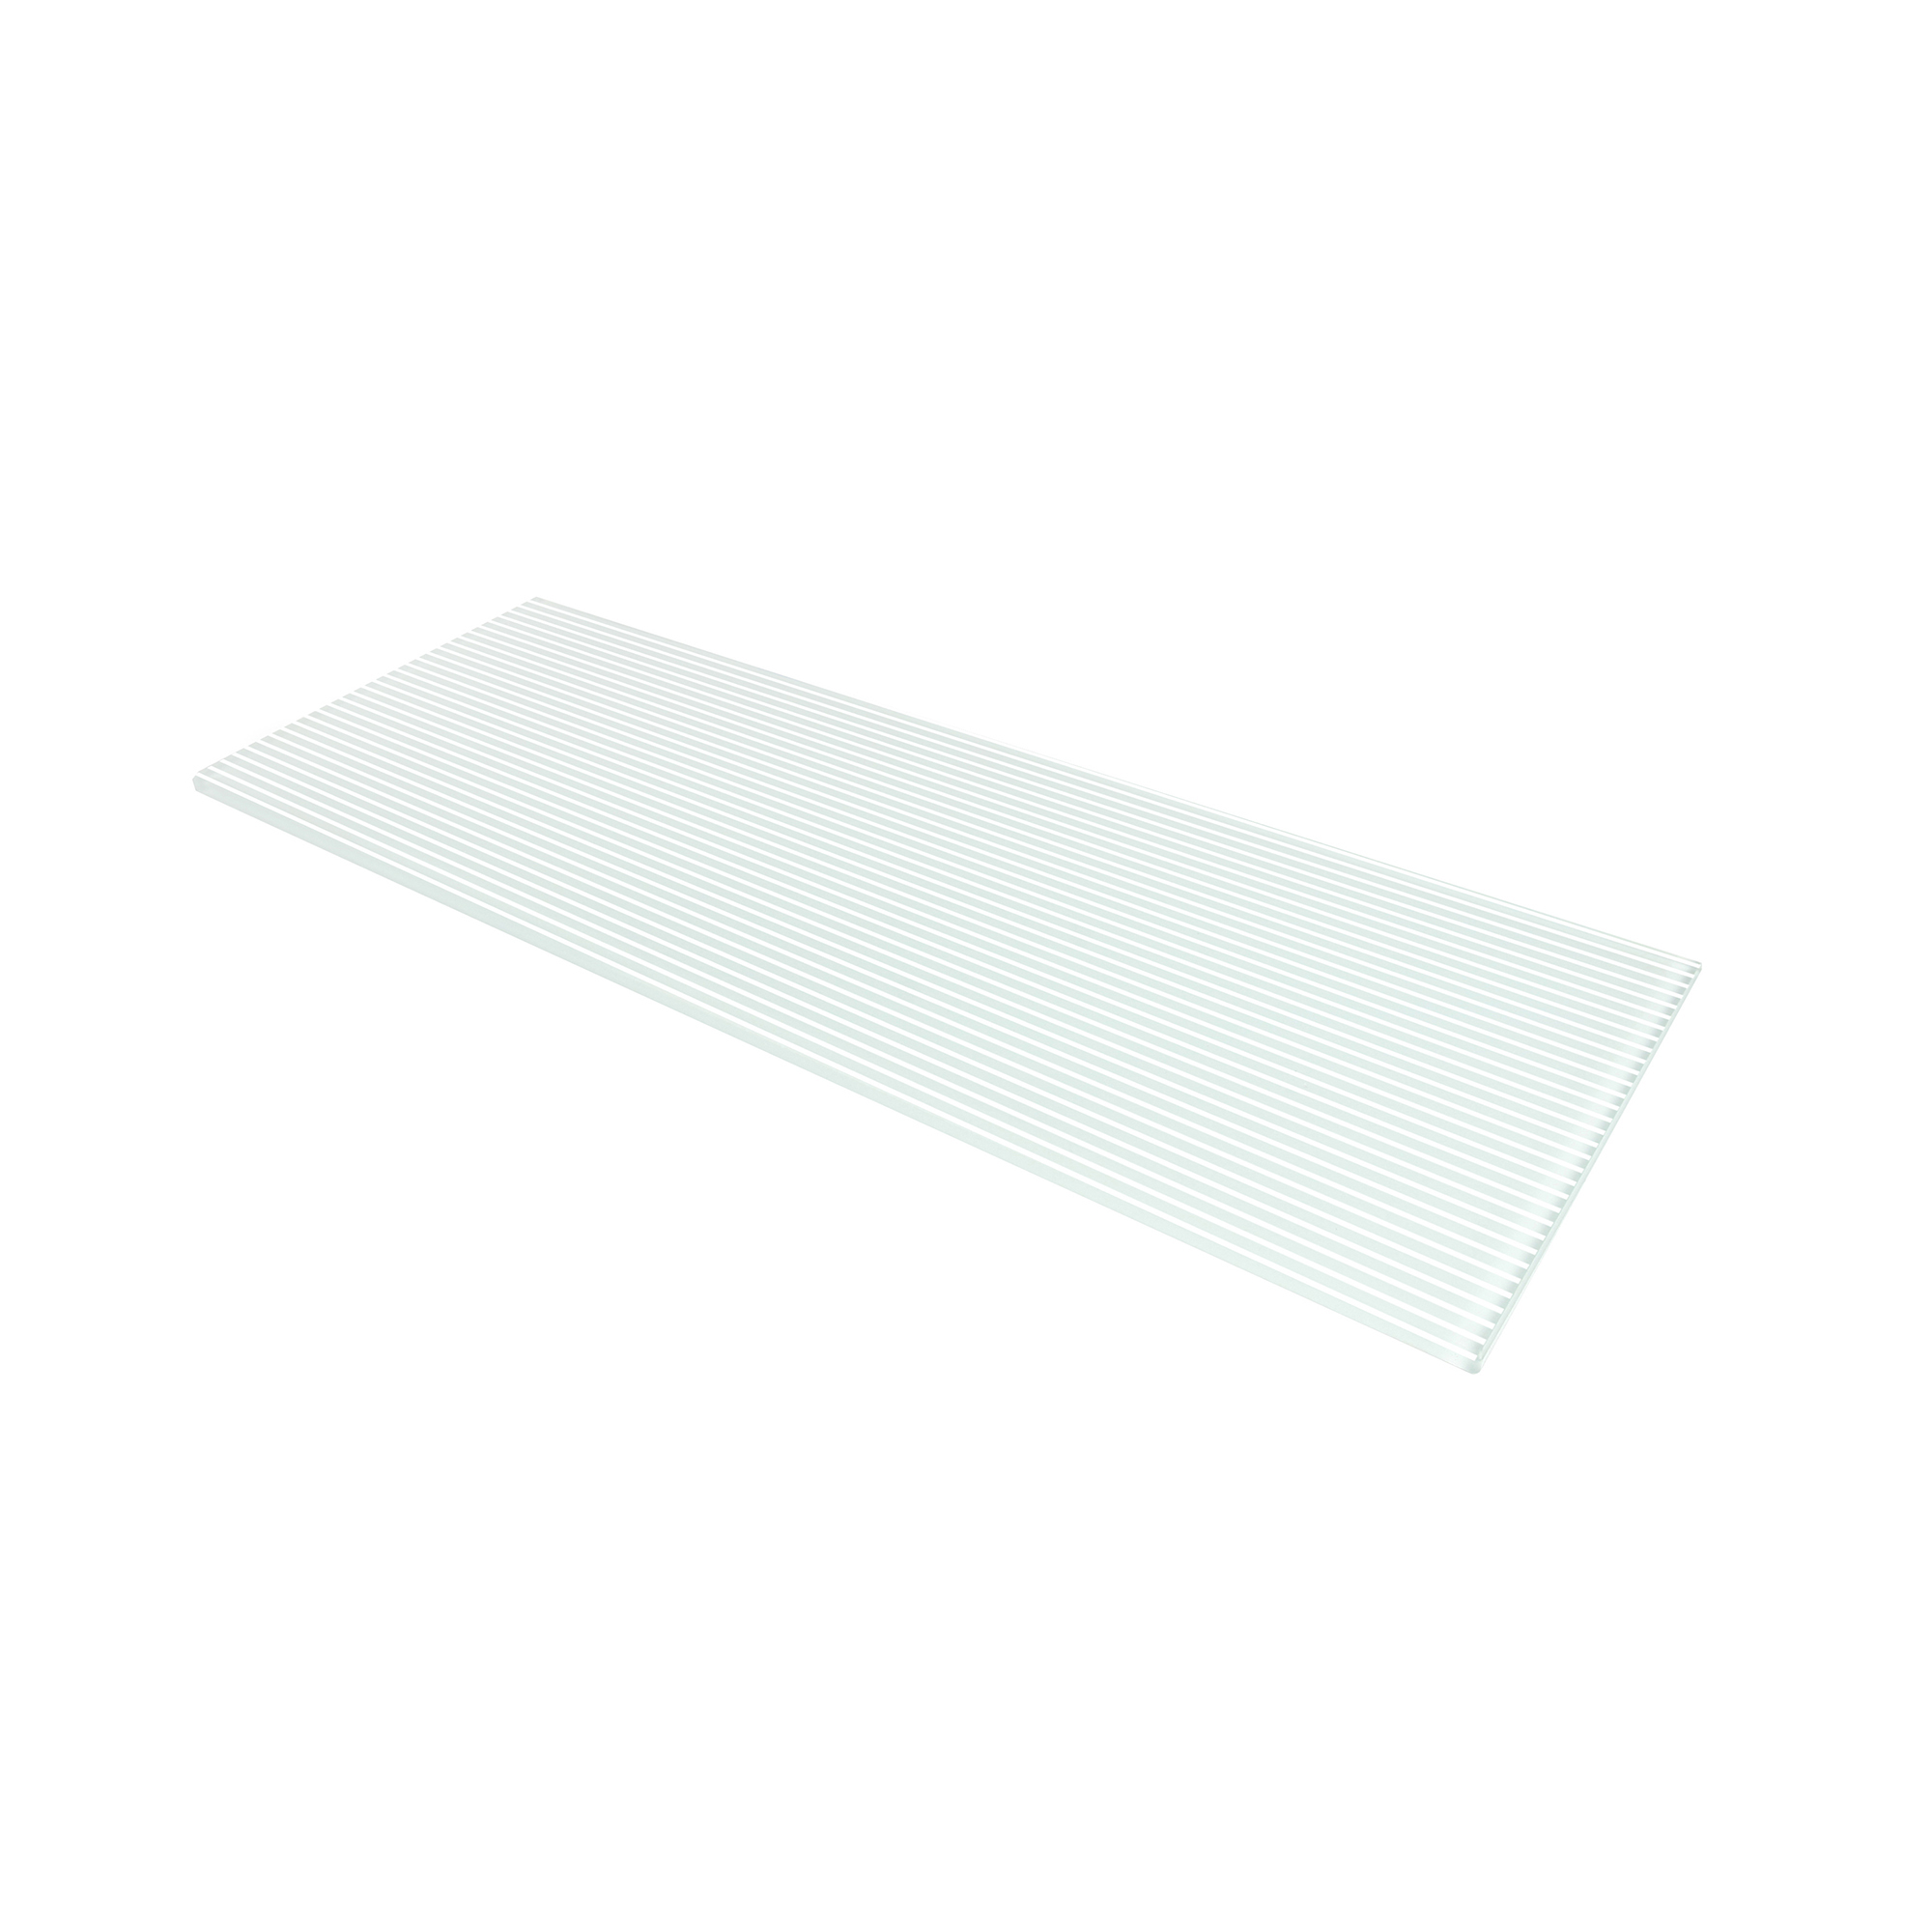 Étagère rectangulaire en verre Finition à rayures blanches | Mesures 400*6*150mm | Épaisseur de l'étagère : 6 mm | 1 unité